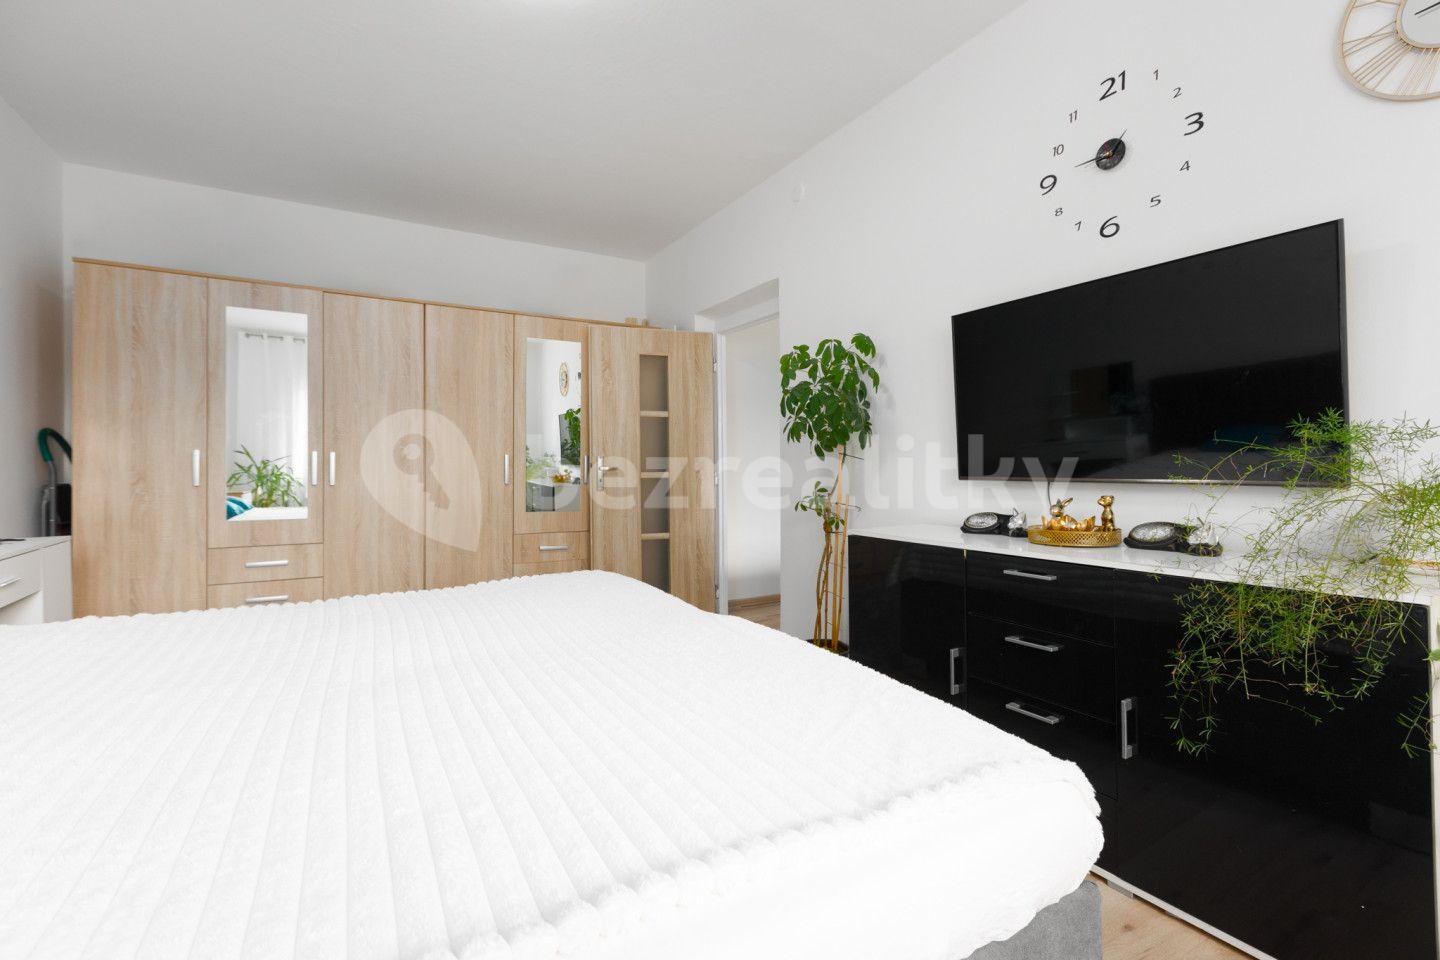 2 bedroom flat for sale, 57 m², Chomutovská, Kadaň, Ústecký Region